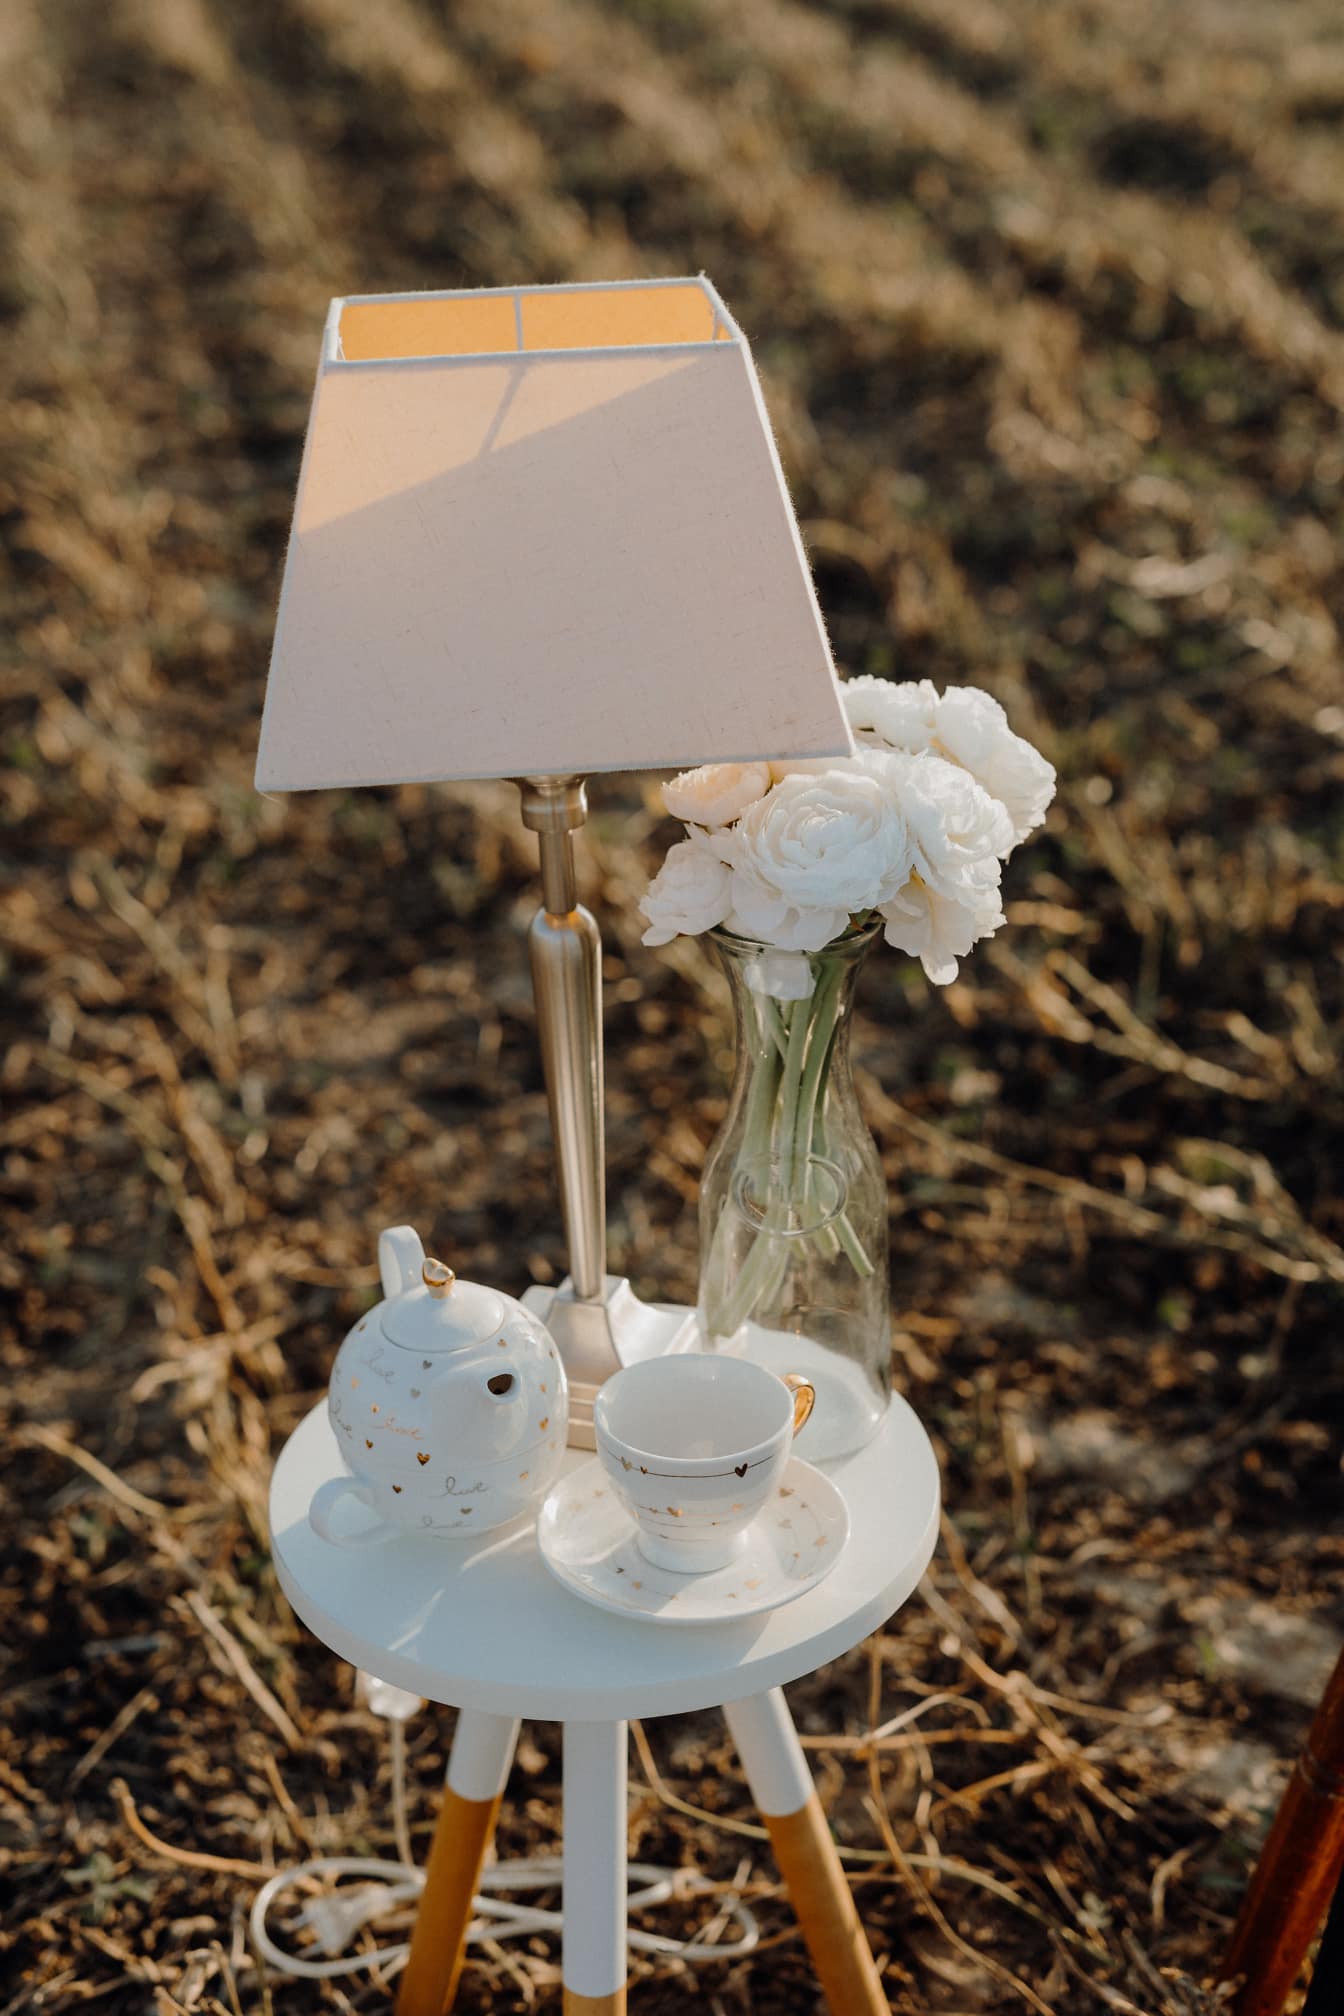 Mesa com um candeeiro moderno, bule de porcelana e um vaso de vidro com flores de rosas brancas